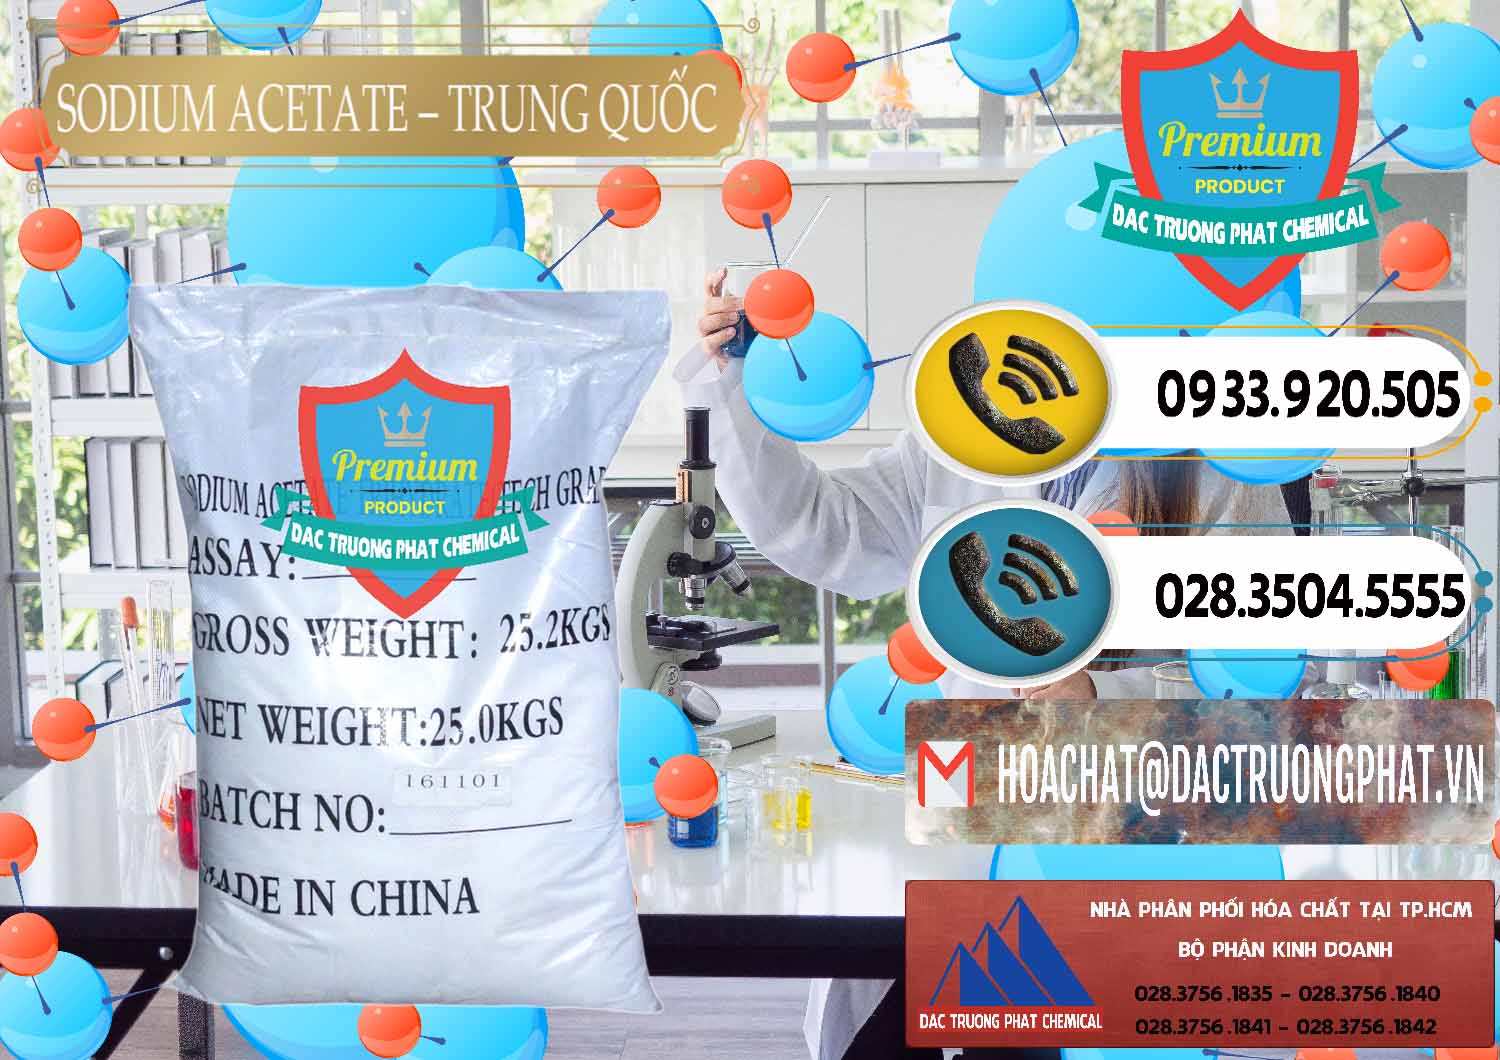 Nơi chuyên nhập khẩu & bán Sodium Acetate - Natri Acetate Trung Quốc China - 0134 - Đơn vị bán và cung cấp hóa chất tại TP.HCM - hoachatdetnhuom.vn